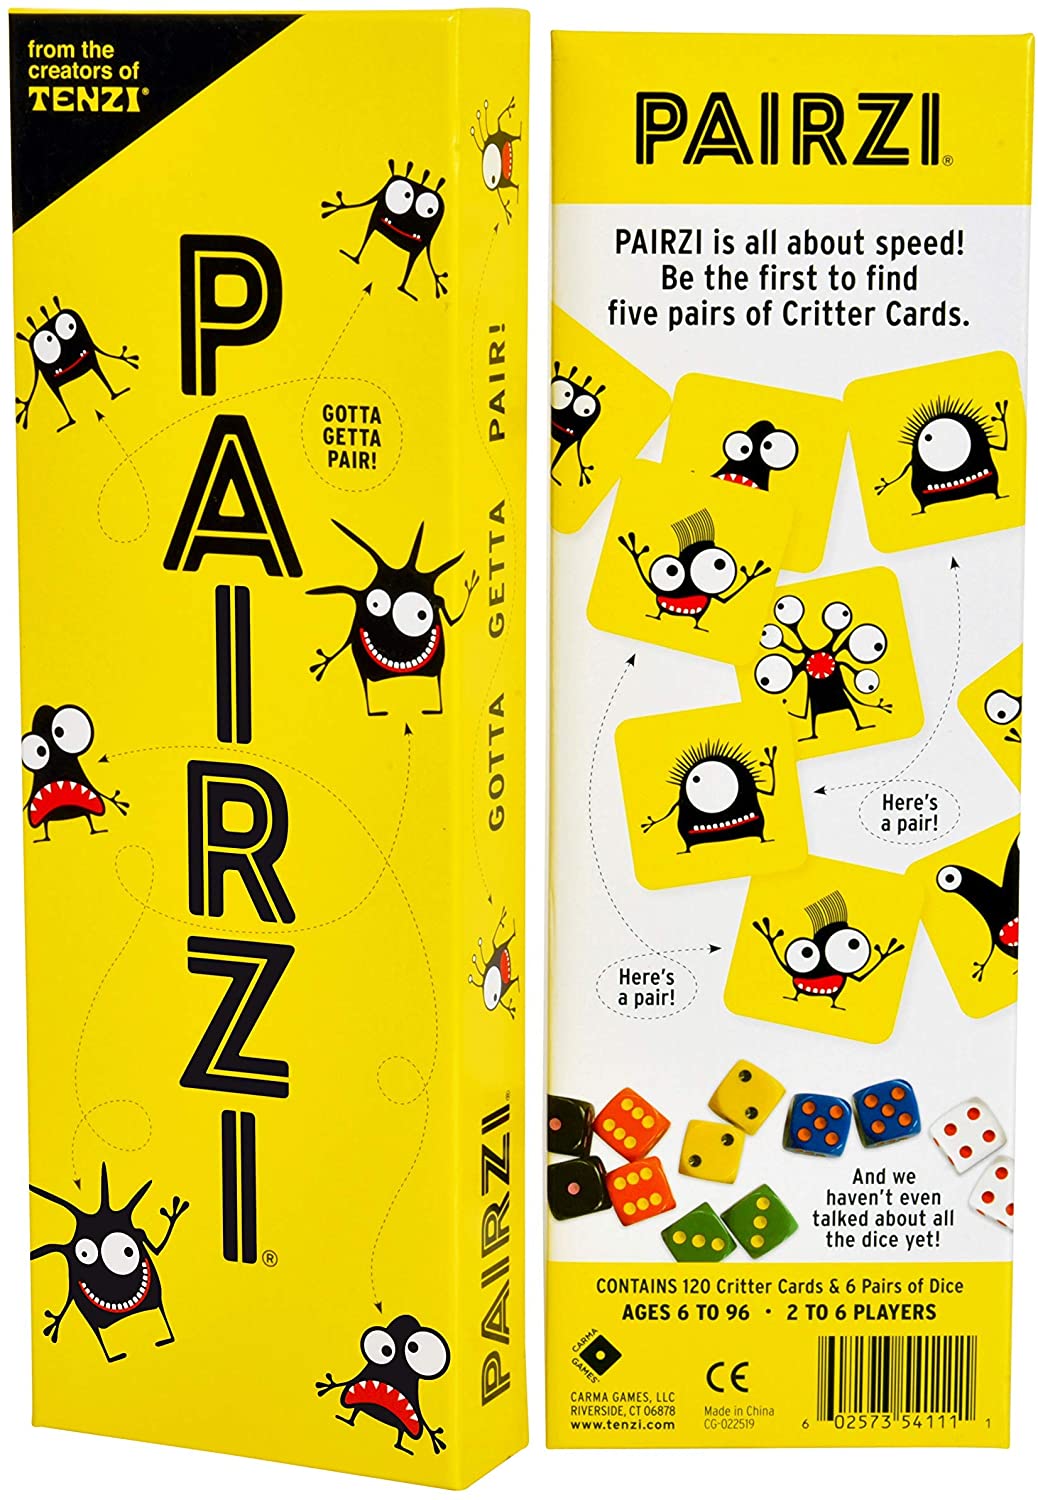 PAIRZI Game and box